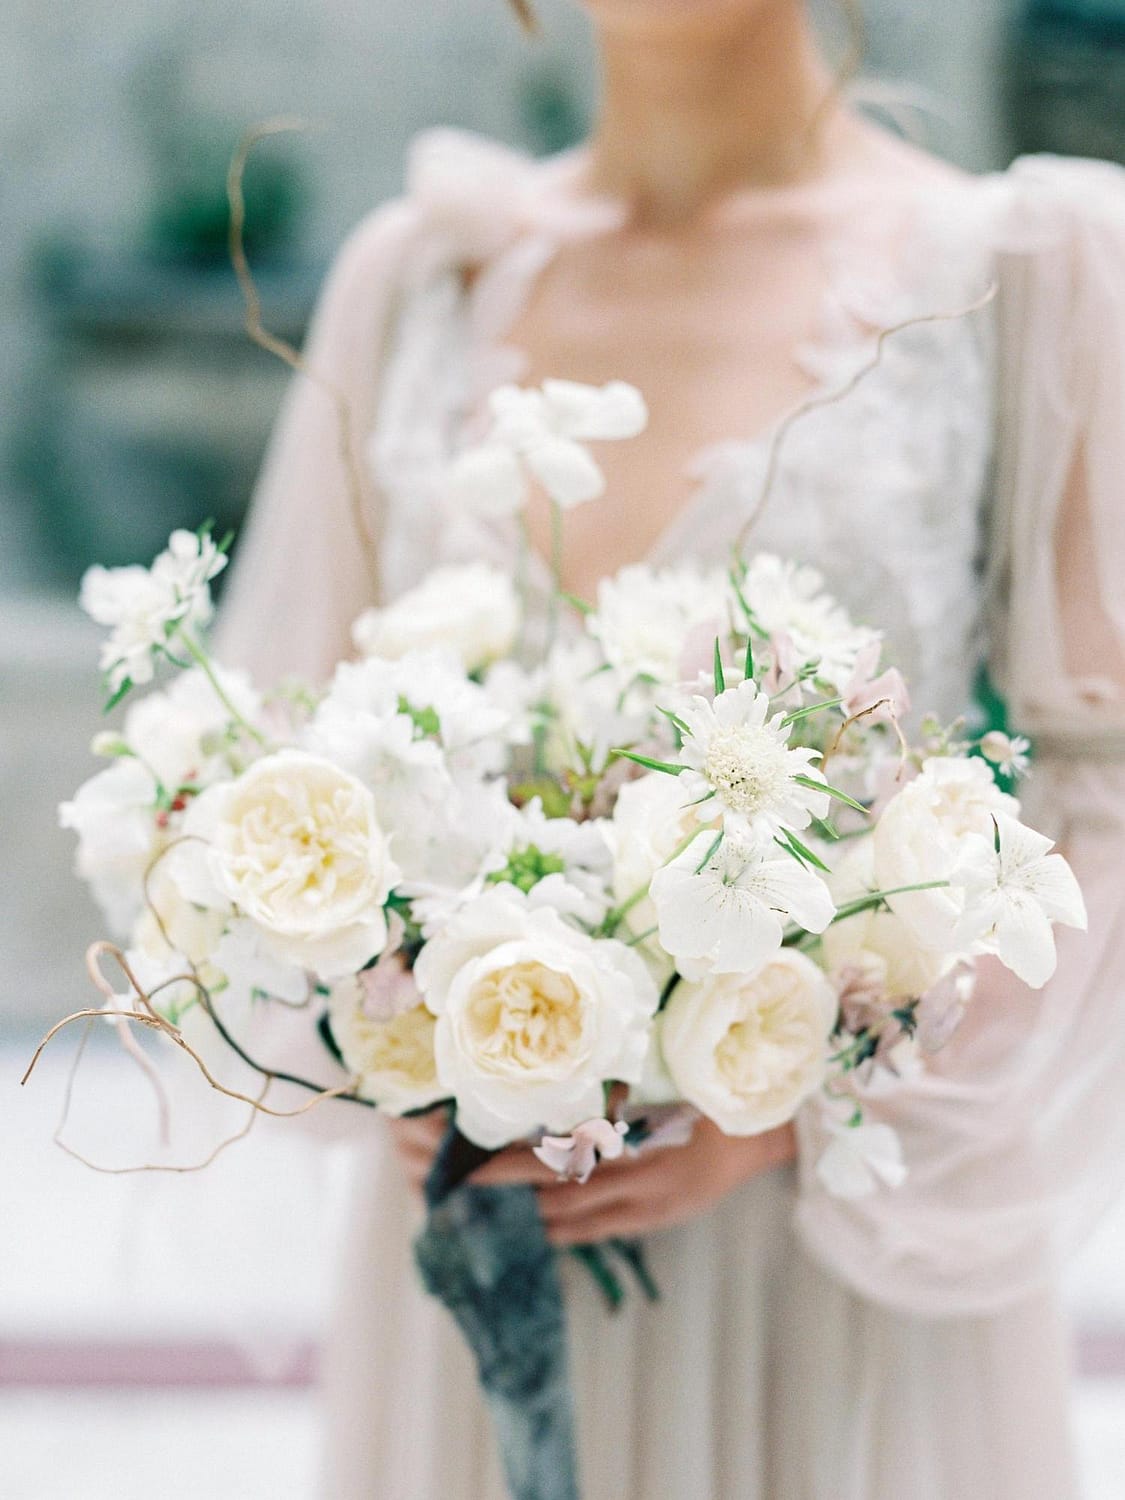 Bouquet de mariage blanc